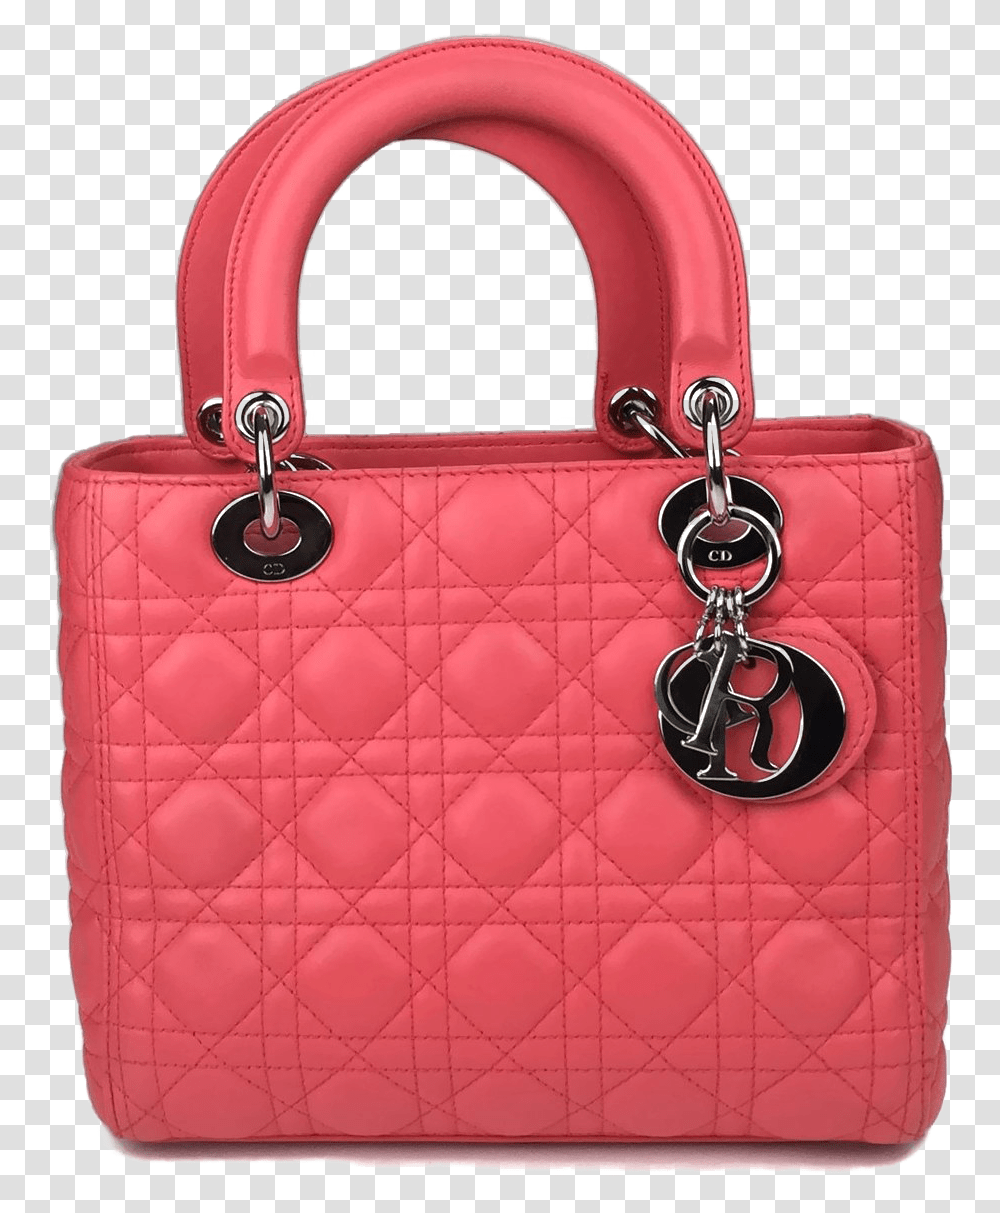 Pink Dior Bag Photo Handbag, Accessories, Accessory, Purse Transparent Png